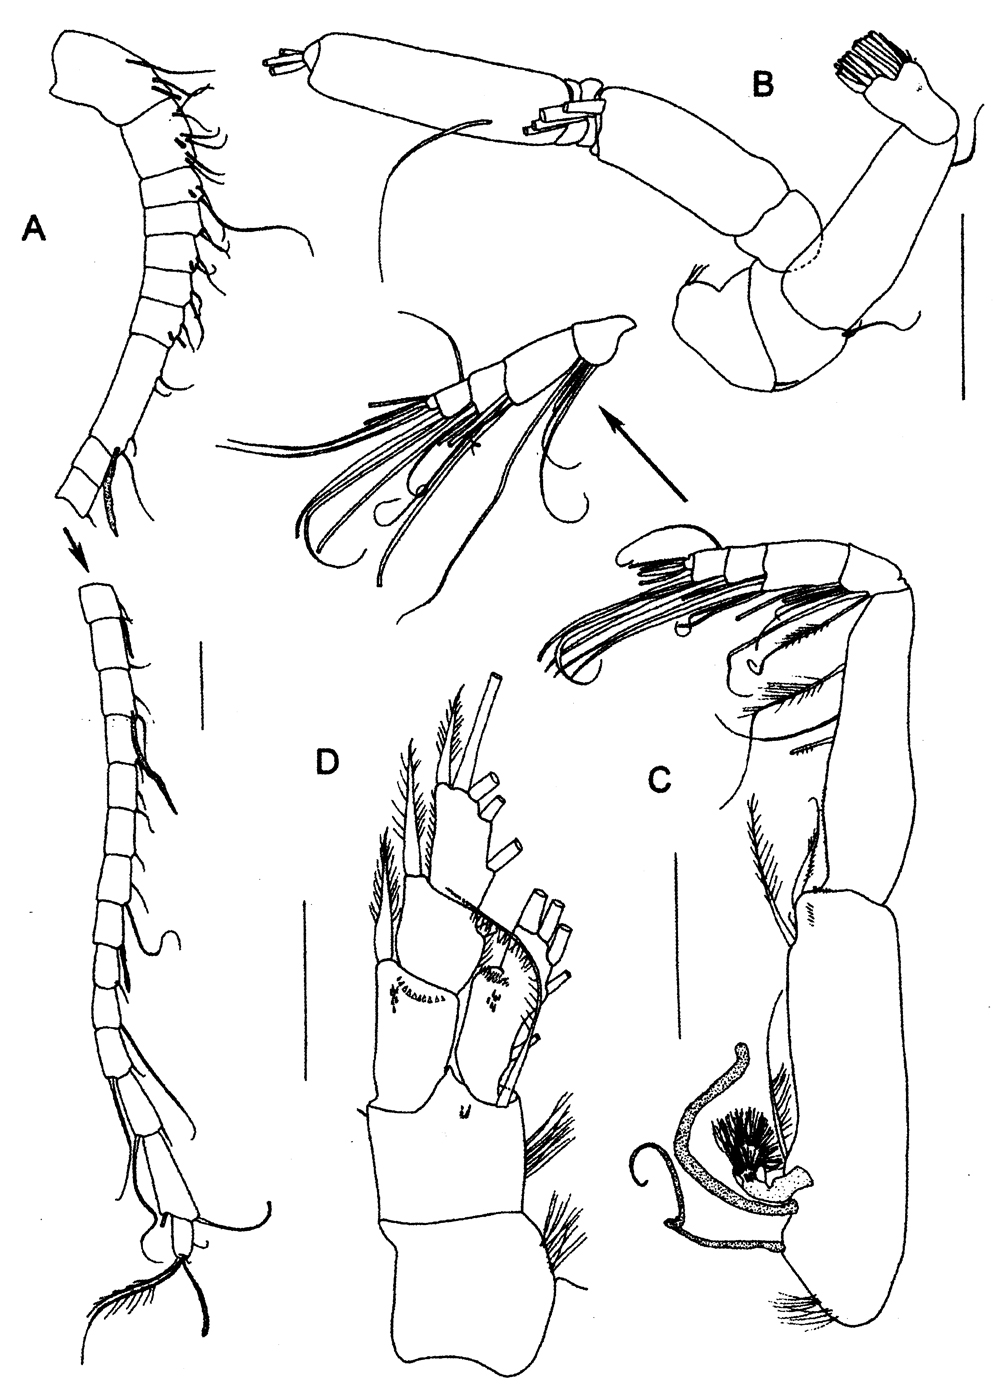 Espèce Diaiscolecithrix andeep - Planche 2 de figures morphologiques